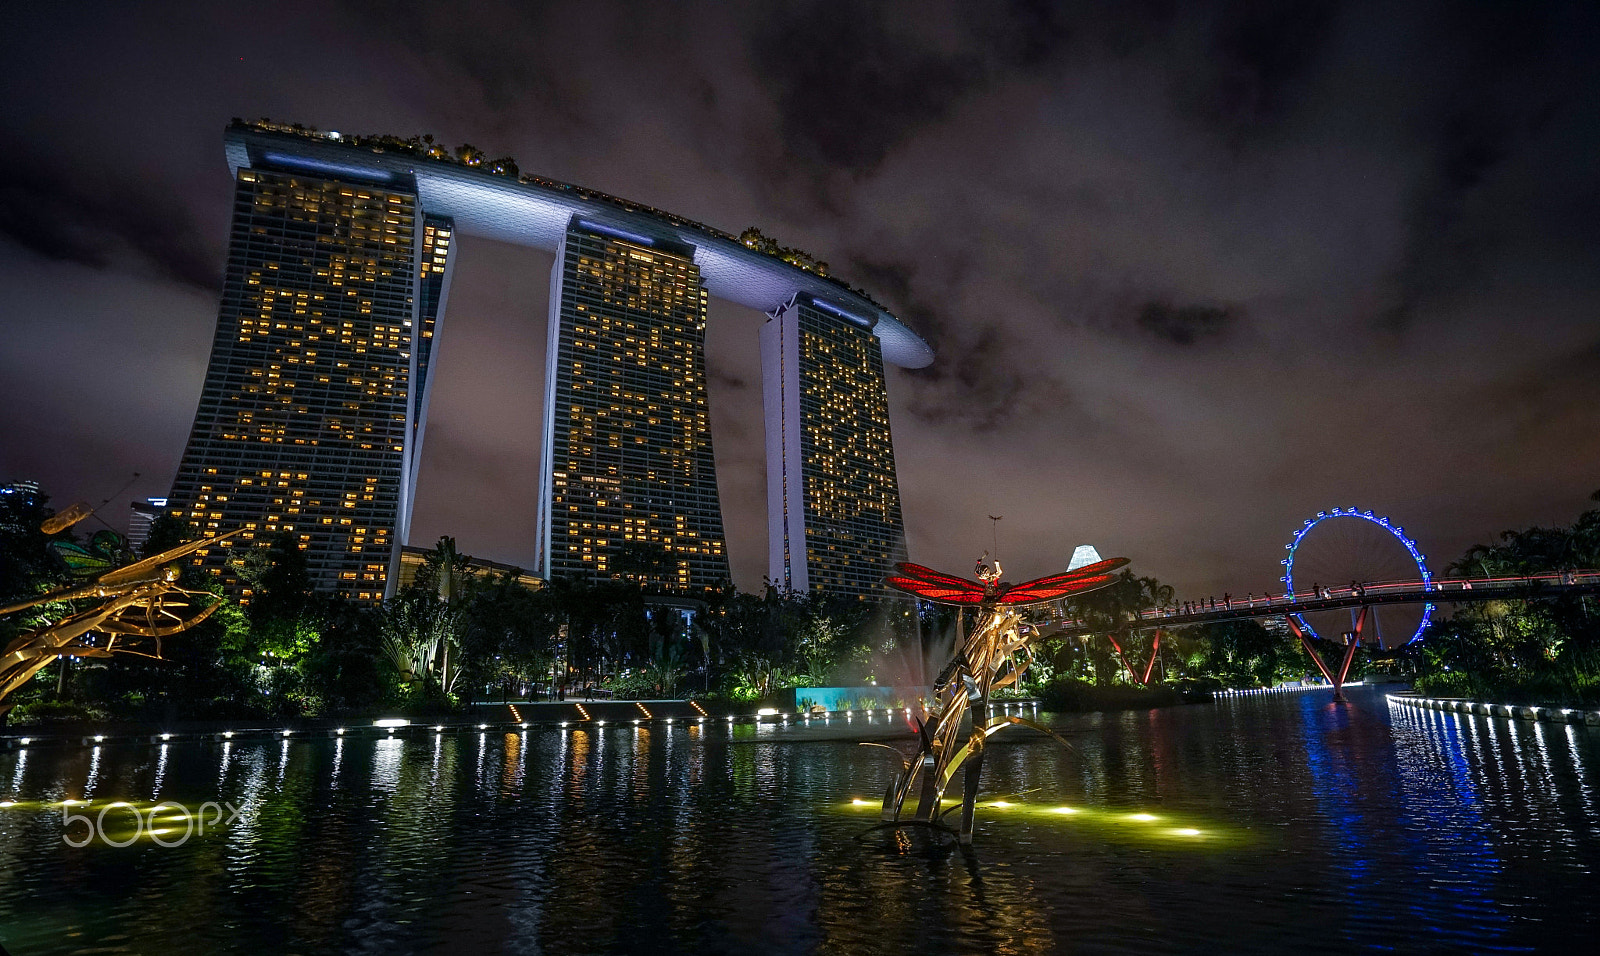 Sony a7 sample photo. Night shoot marina bay sands hotel / singapore photography